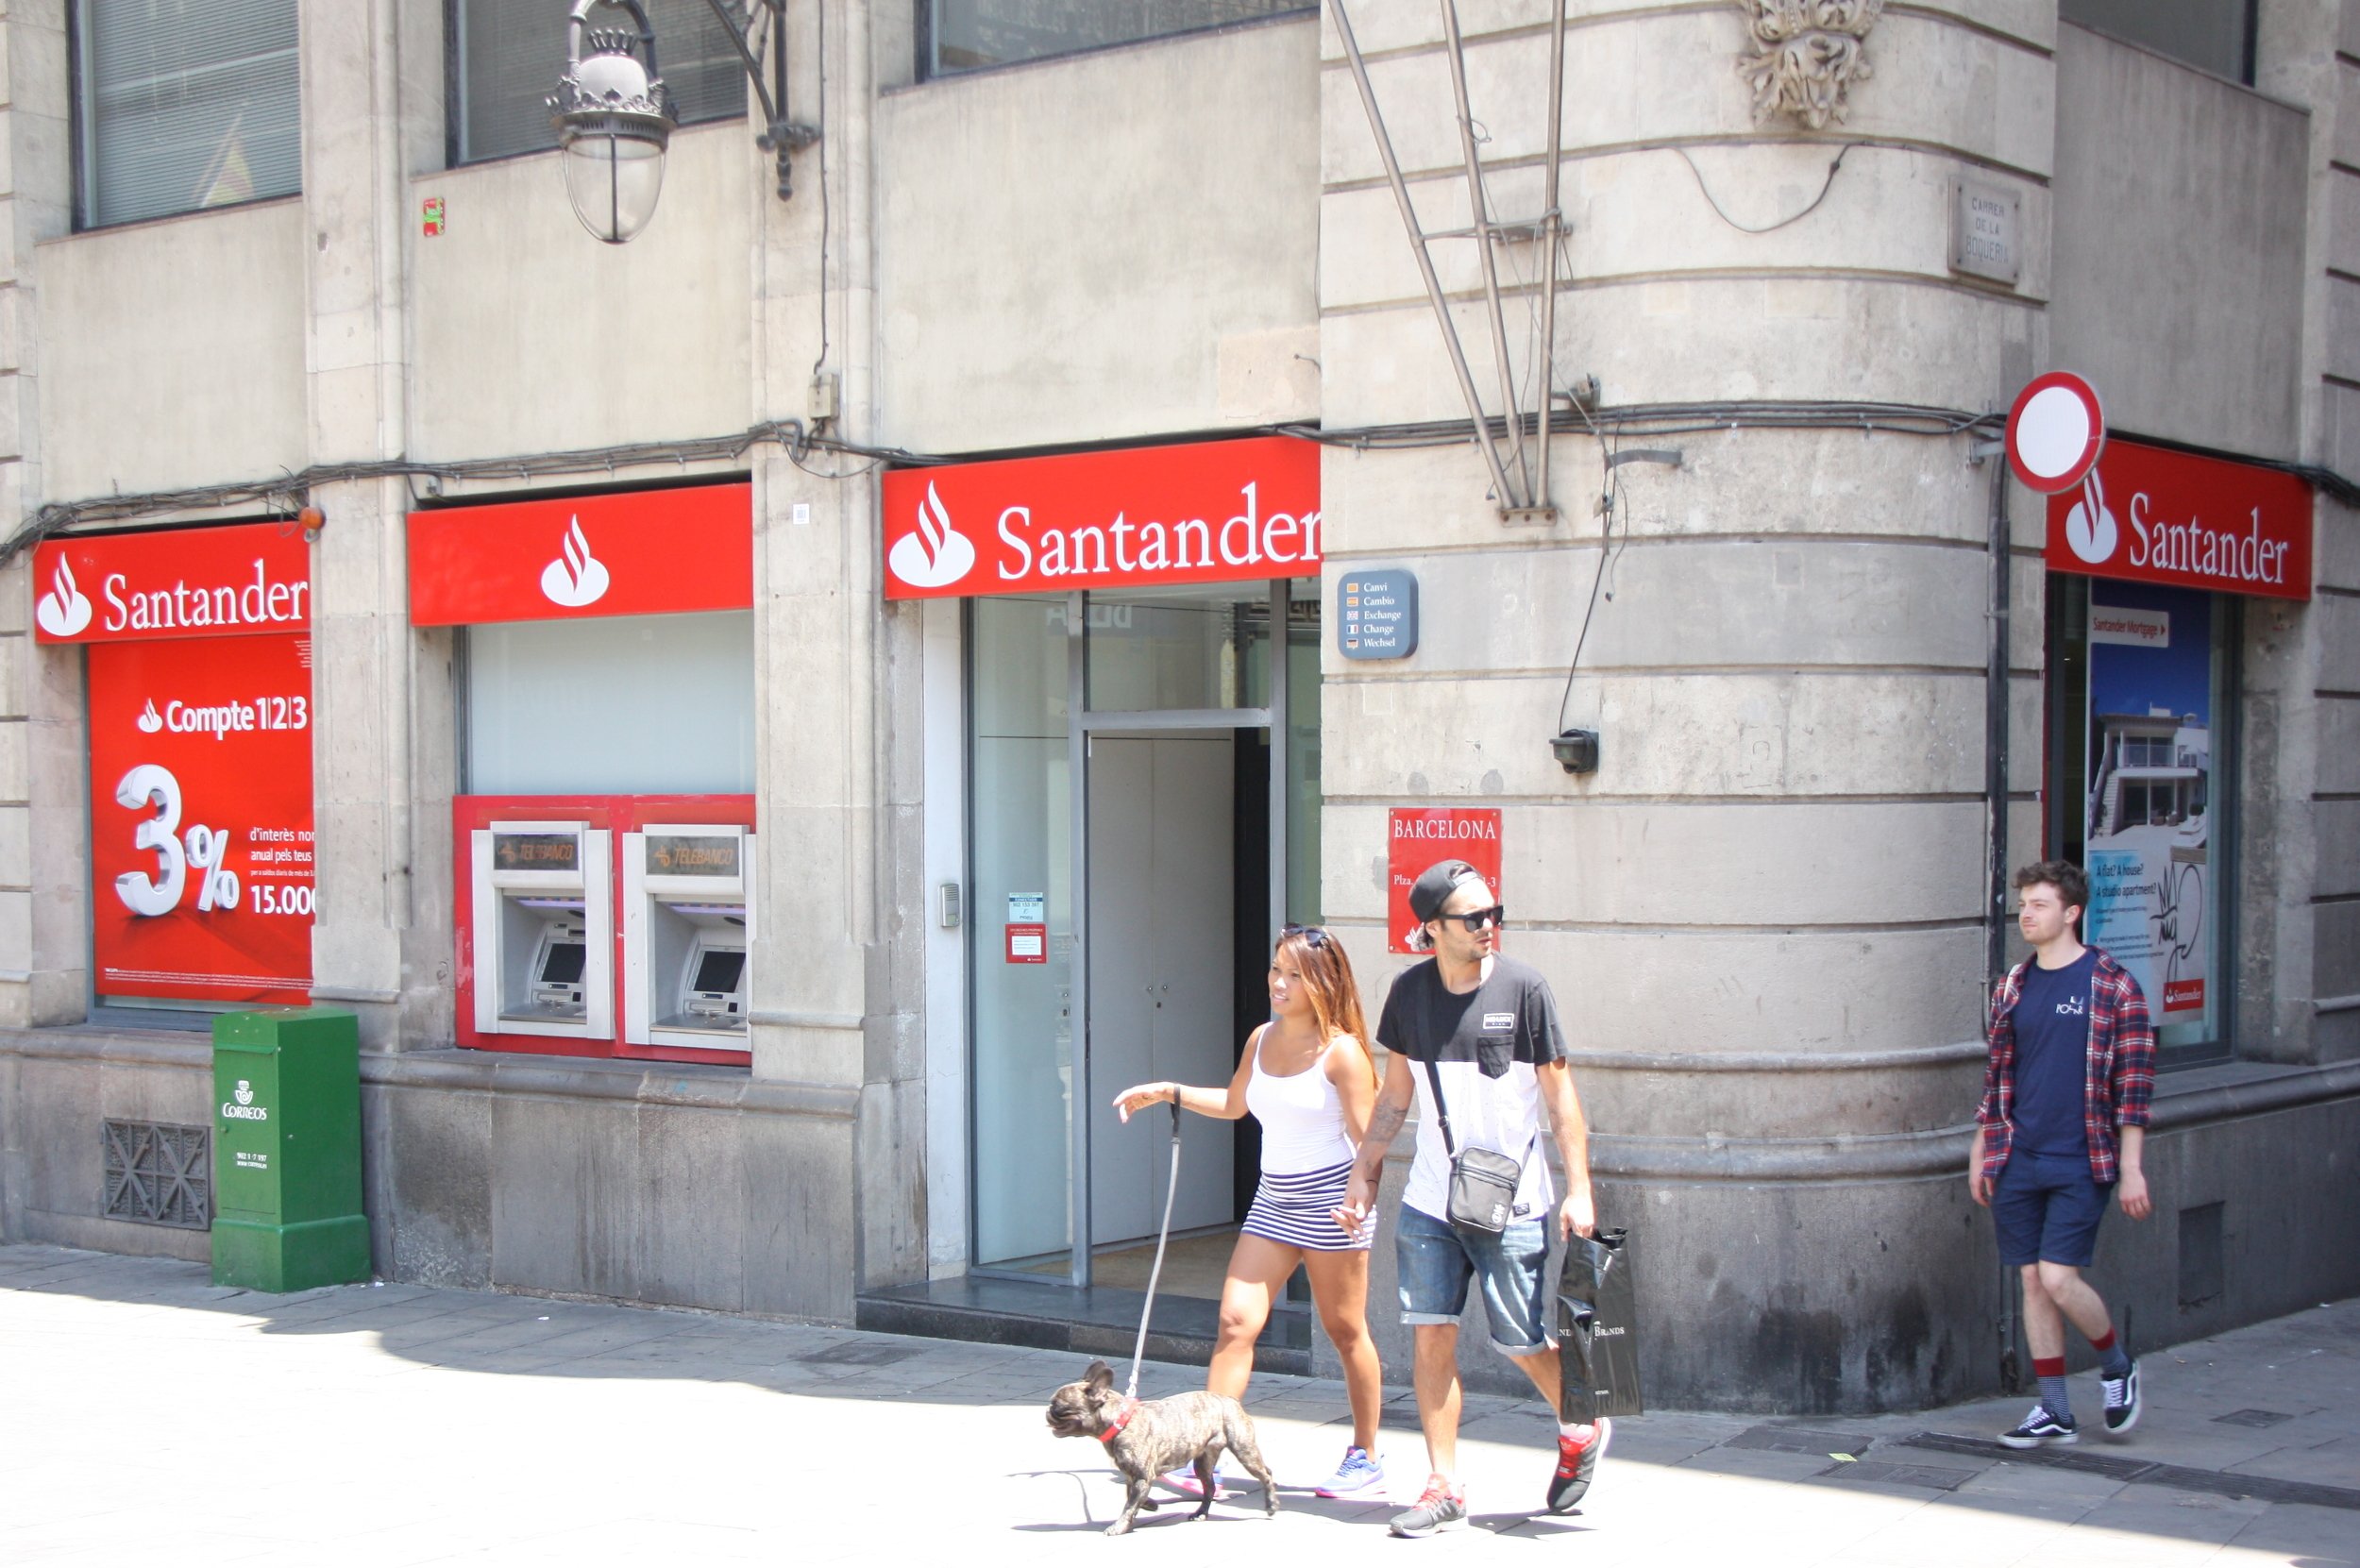 El Santander, escollit millor banc privat a Mèxic, Chile i Portugal